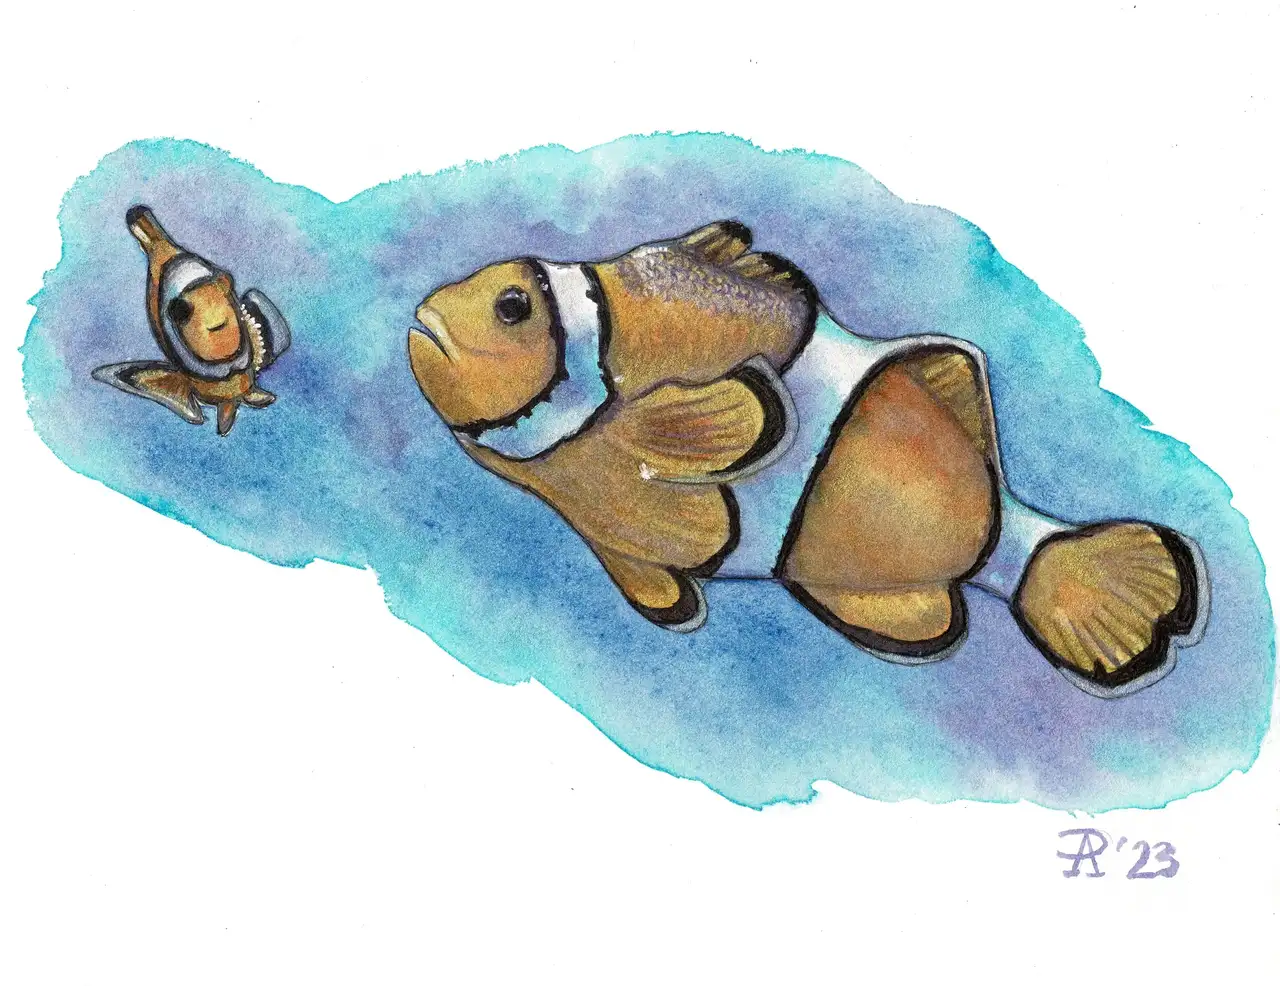 آموزش نحوه طراحی و رنگ آمیزی دلقک ماهی در آبرنگ با برجسته های فلزی و جوهر